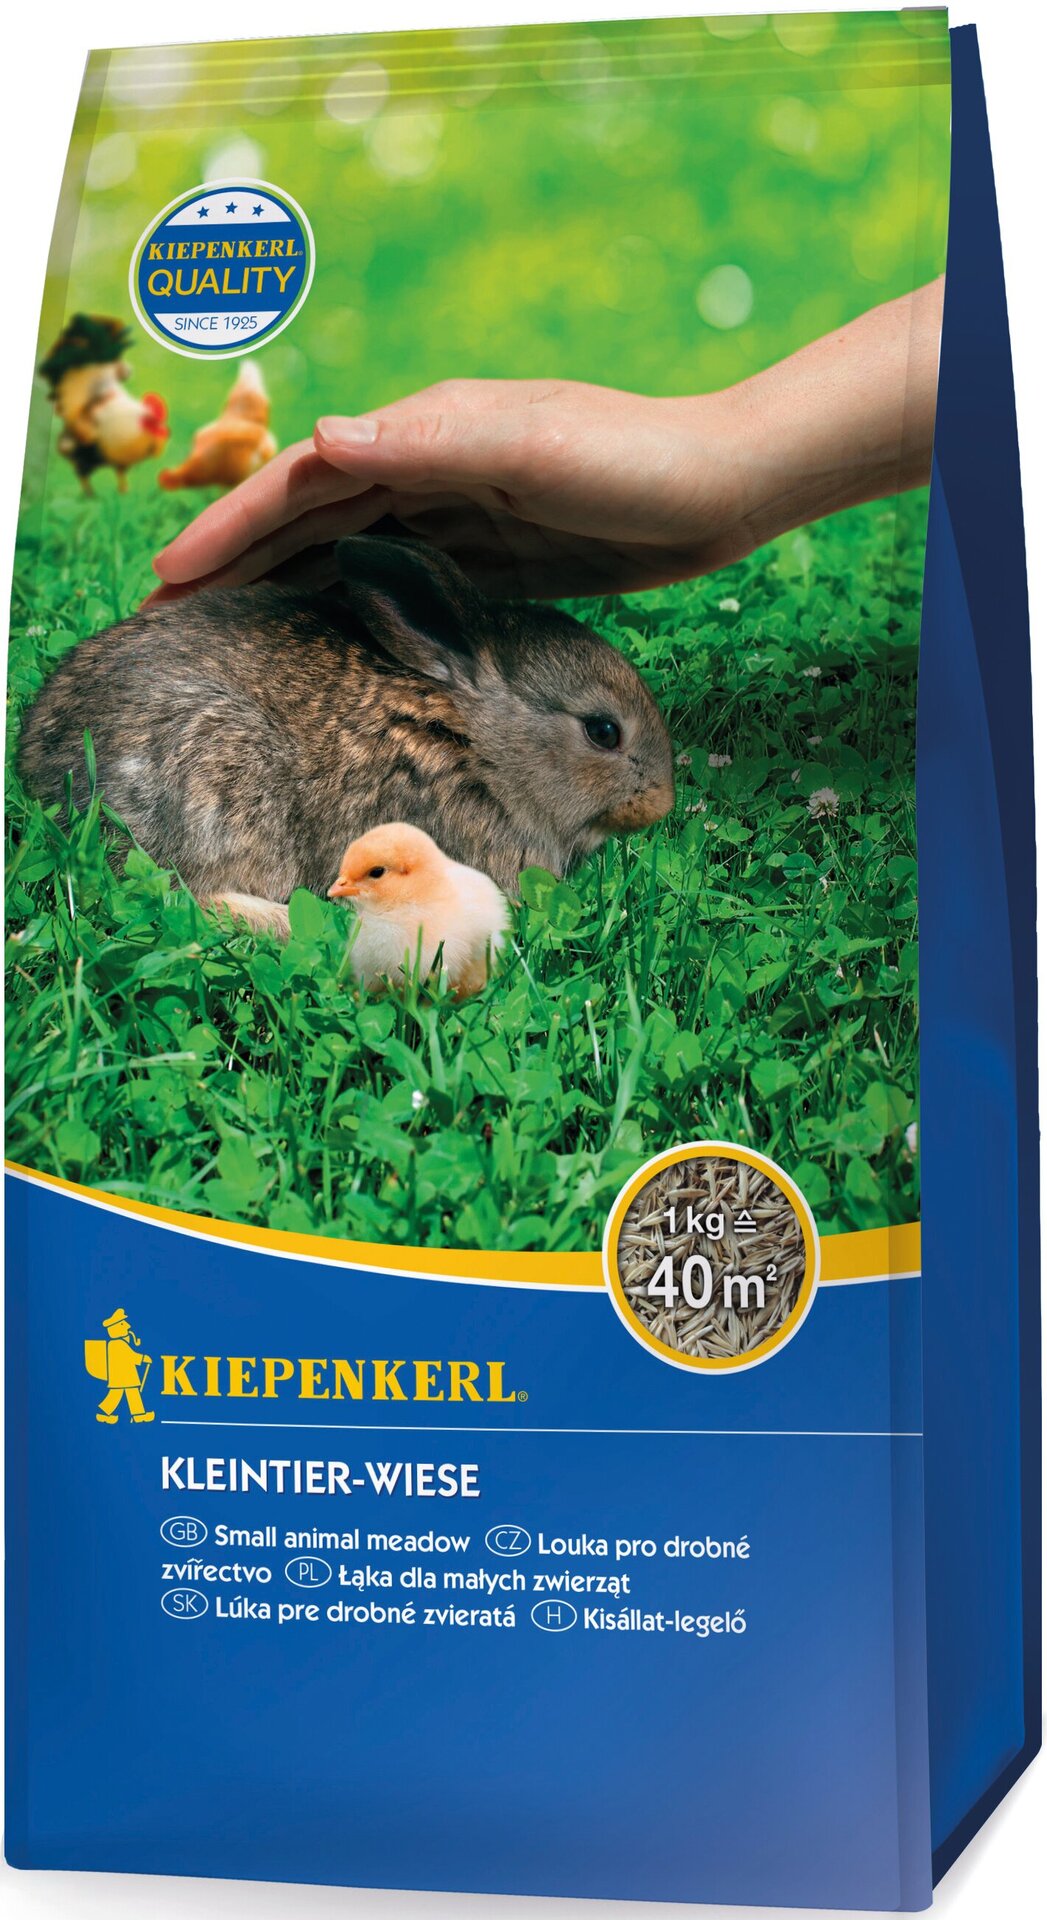 Kleintier-Wiese, 1 kg